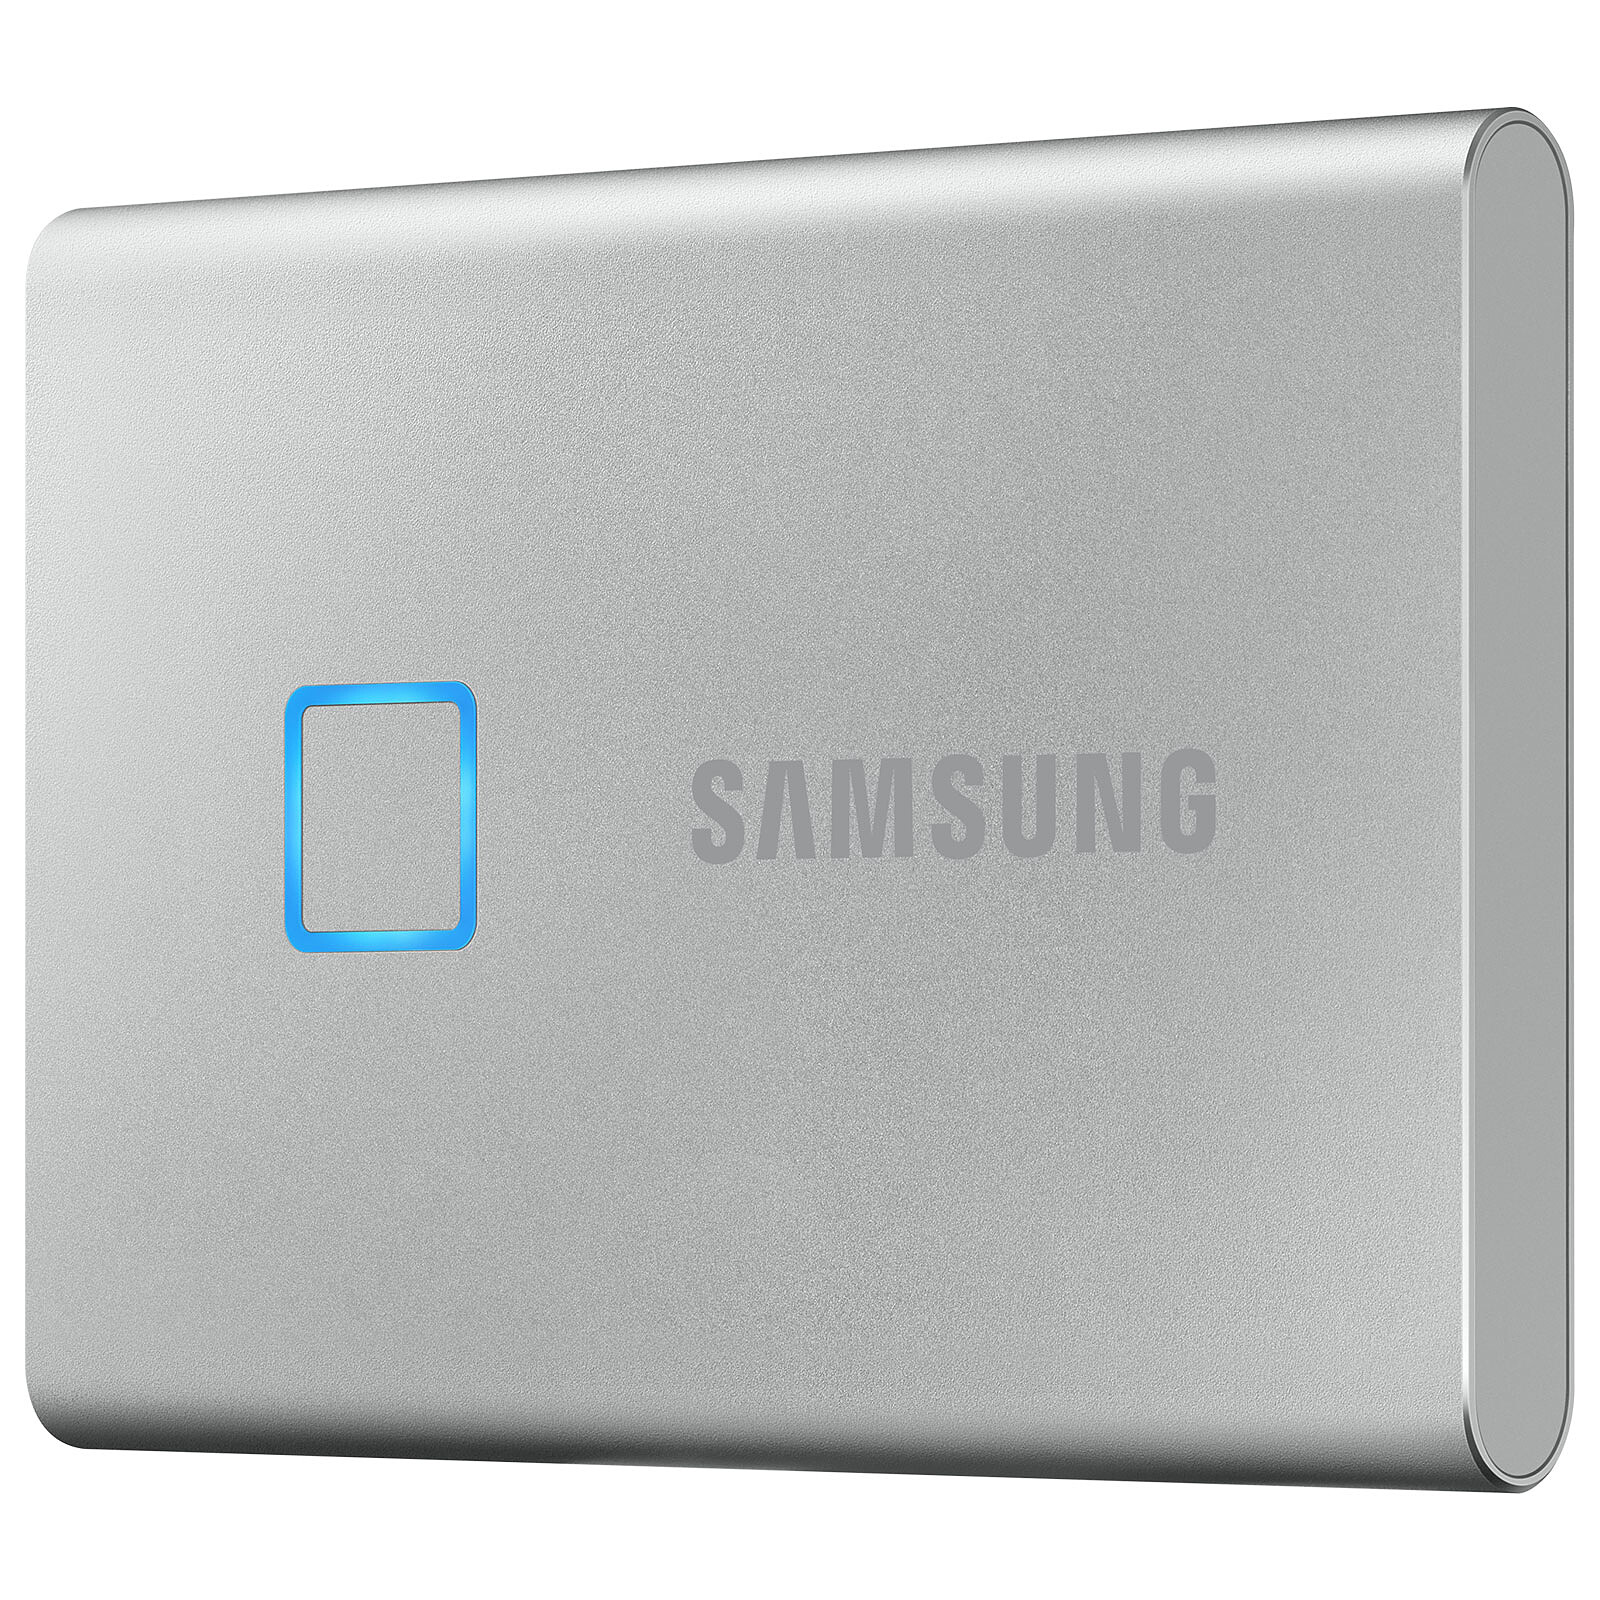 Samsung Portable SSD T7 Touch 500 Go Argent - Disque dur externe